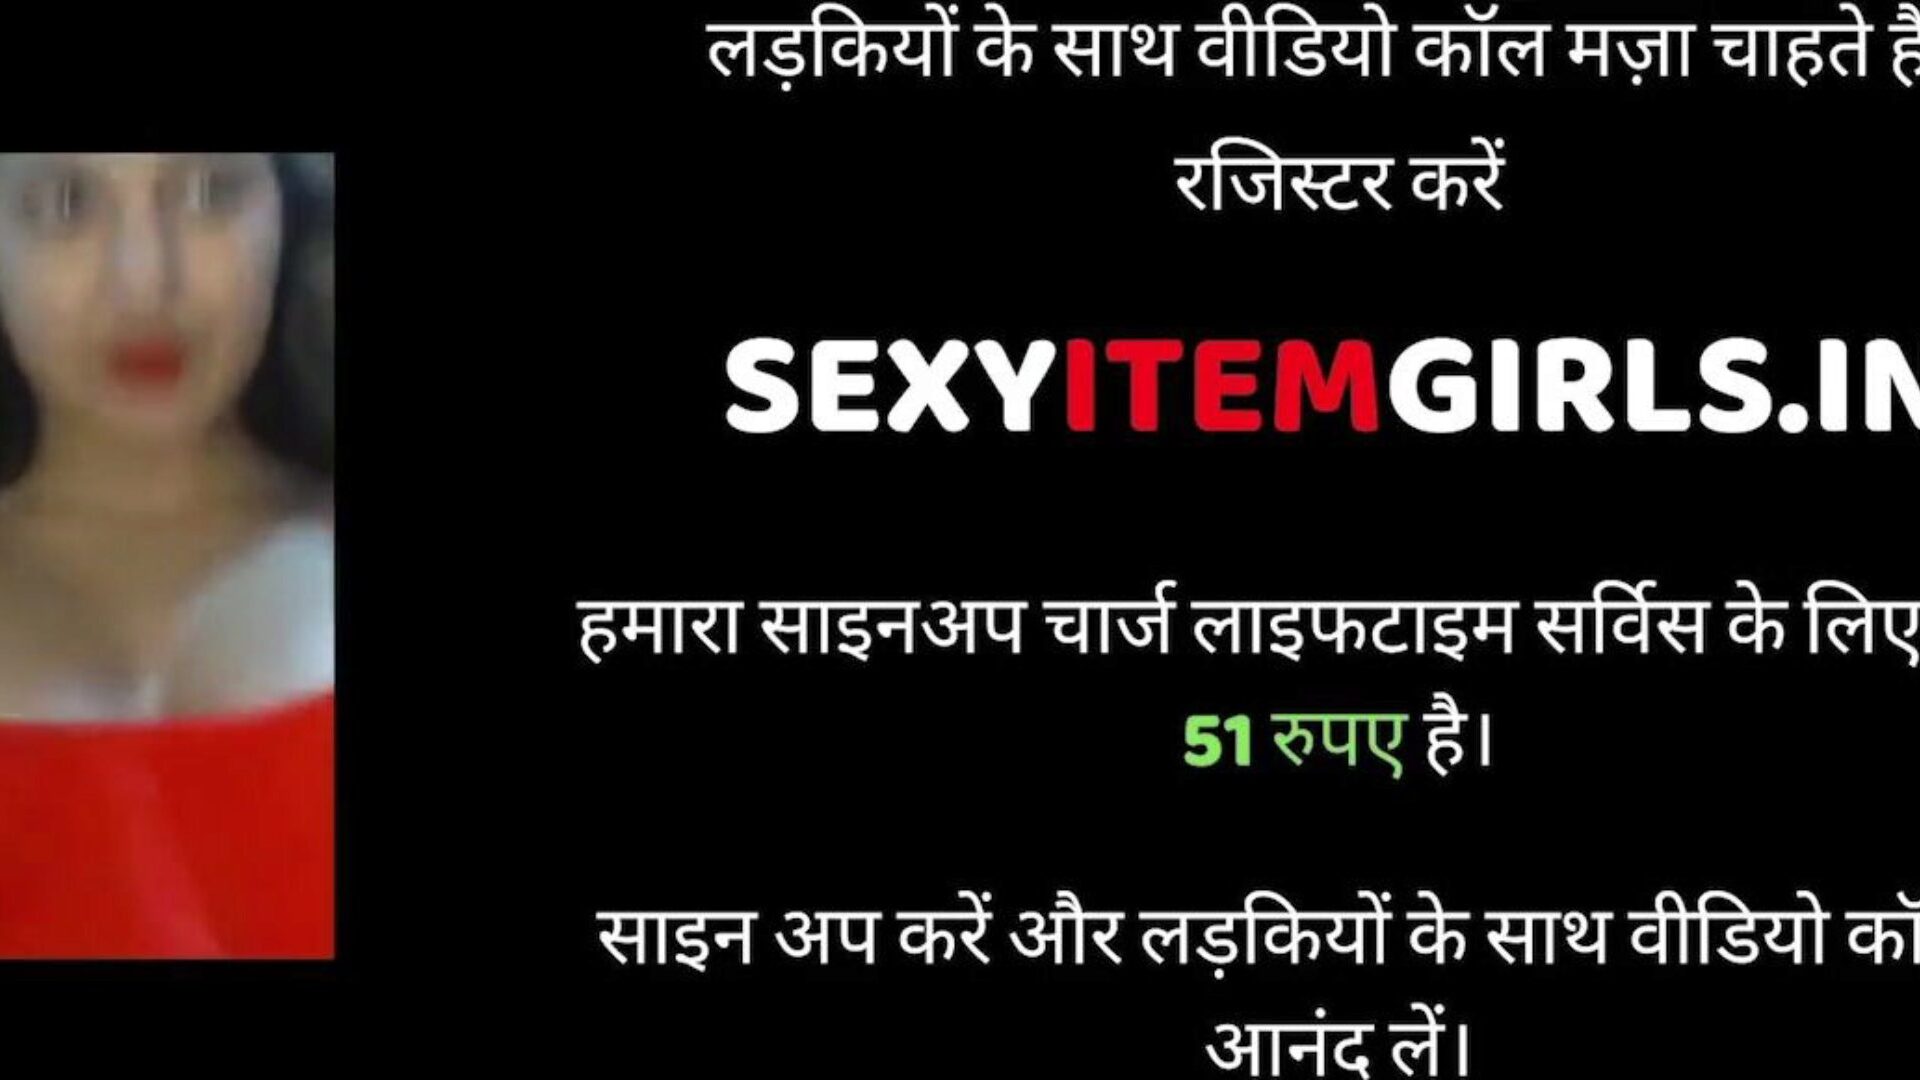 indiai férj és feleség szex, ingyenes szex xnxx pornó 95: xhamster nézd meg az indiai férj és feleség szex videót a xhamsteren, a legkövérebb hd púpos csőhellyel, ahol rengeteg mindenféle szex xnxx kemény és cum punci pornográf filmben